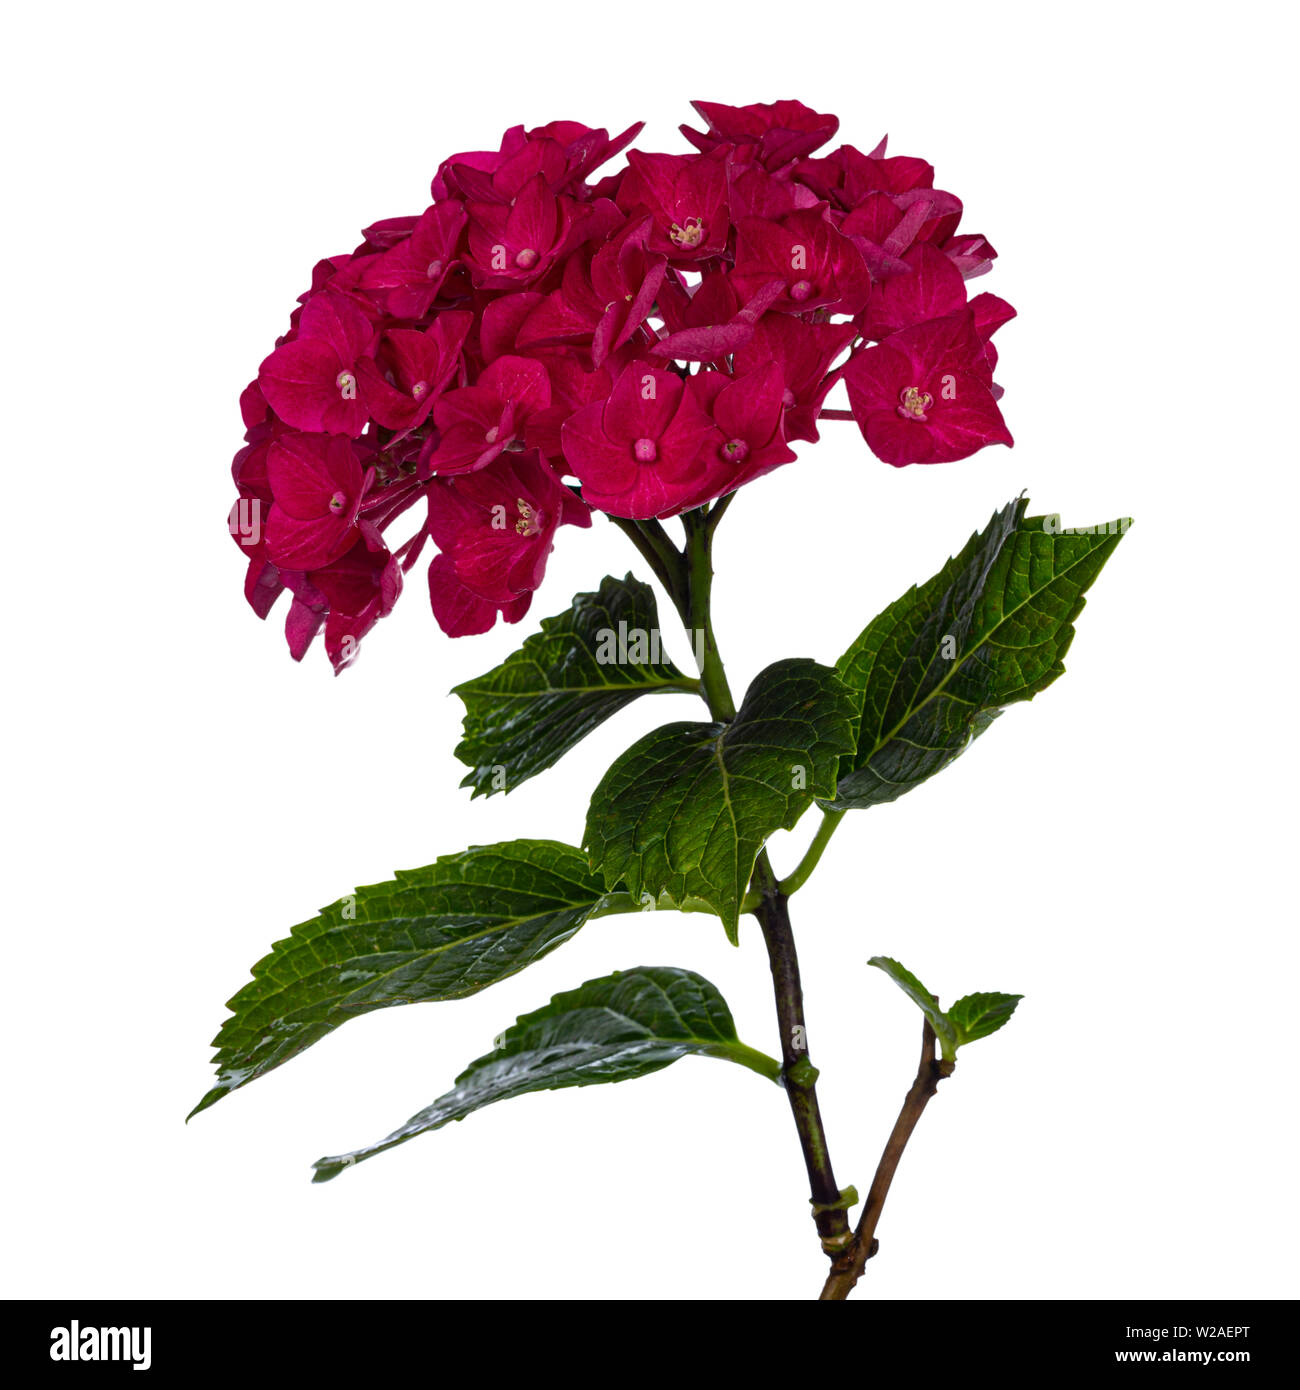 Vista laterale di colore rossastro /rosa scuro Hortensia fiore con foglie di colore verde, isolato su sfondo bianco. Foto Stock